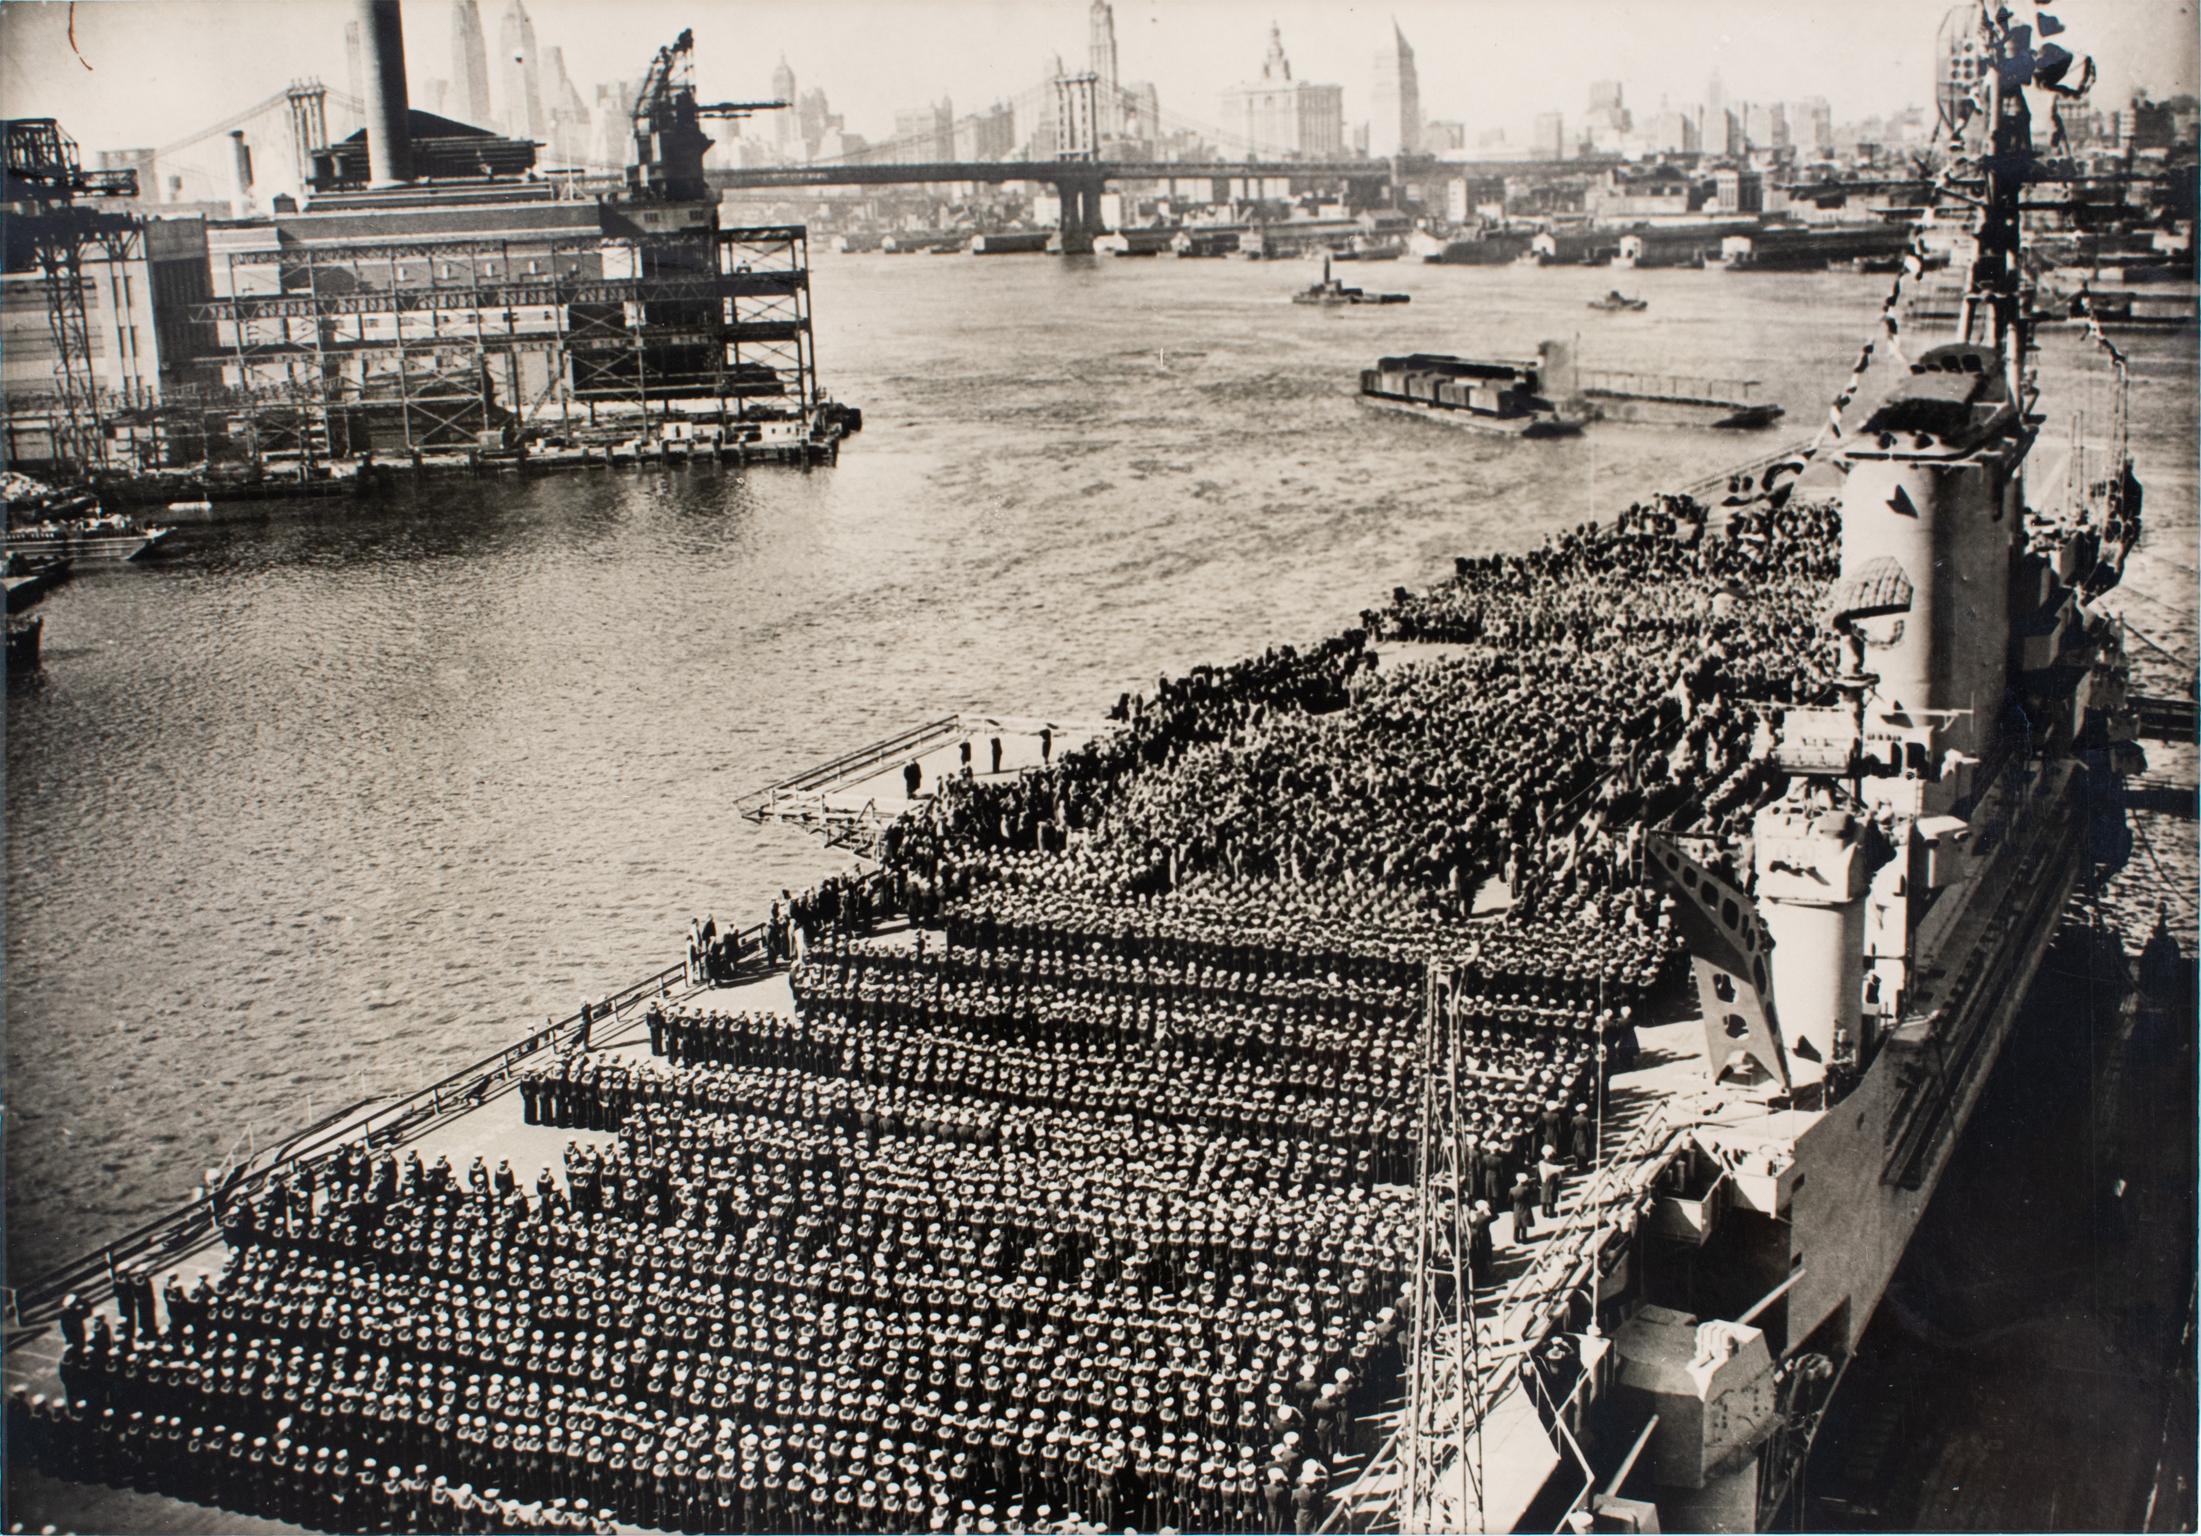 Photographie encadrée B et W en gélatine argentique du jour de la marine américaine Roosevelt, New York, 1945